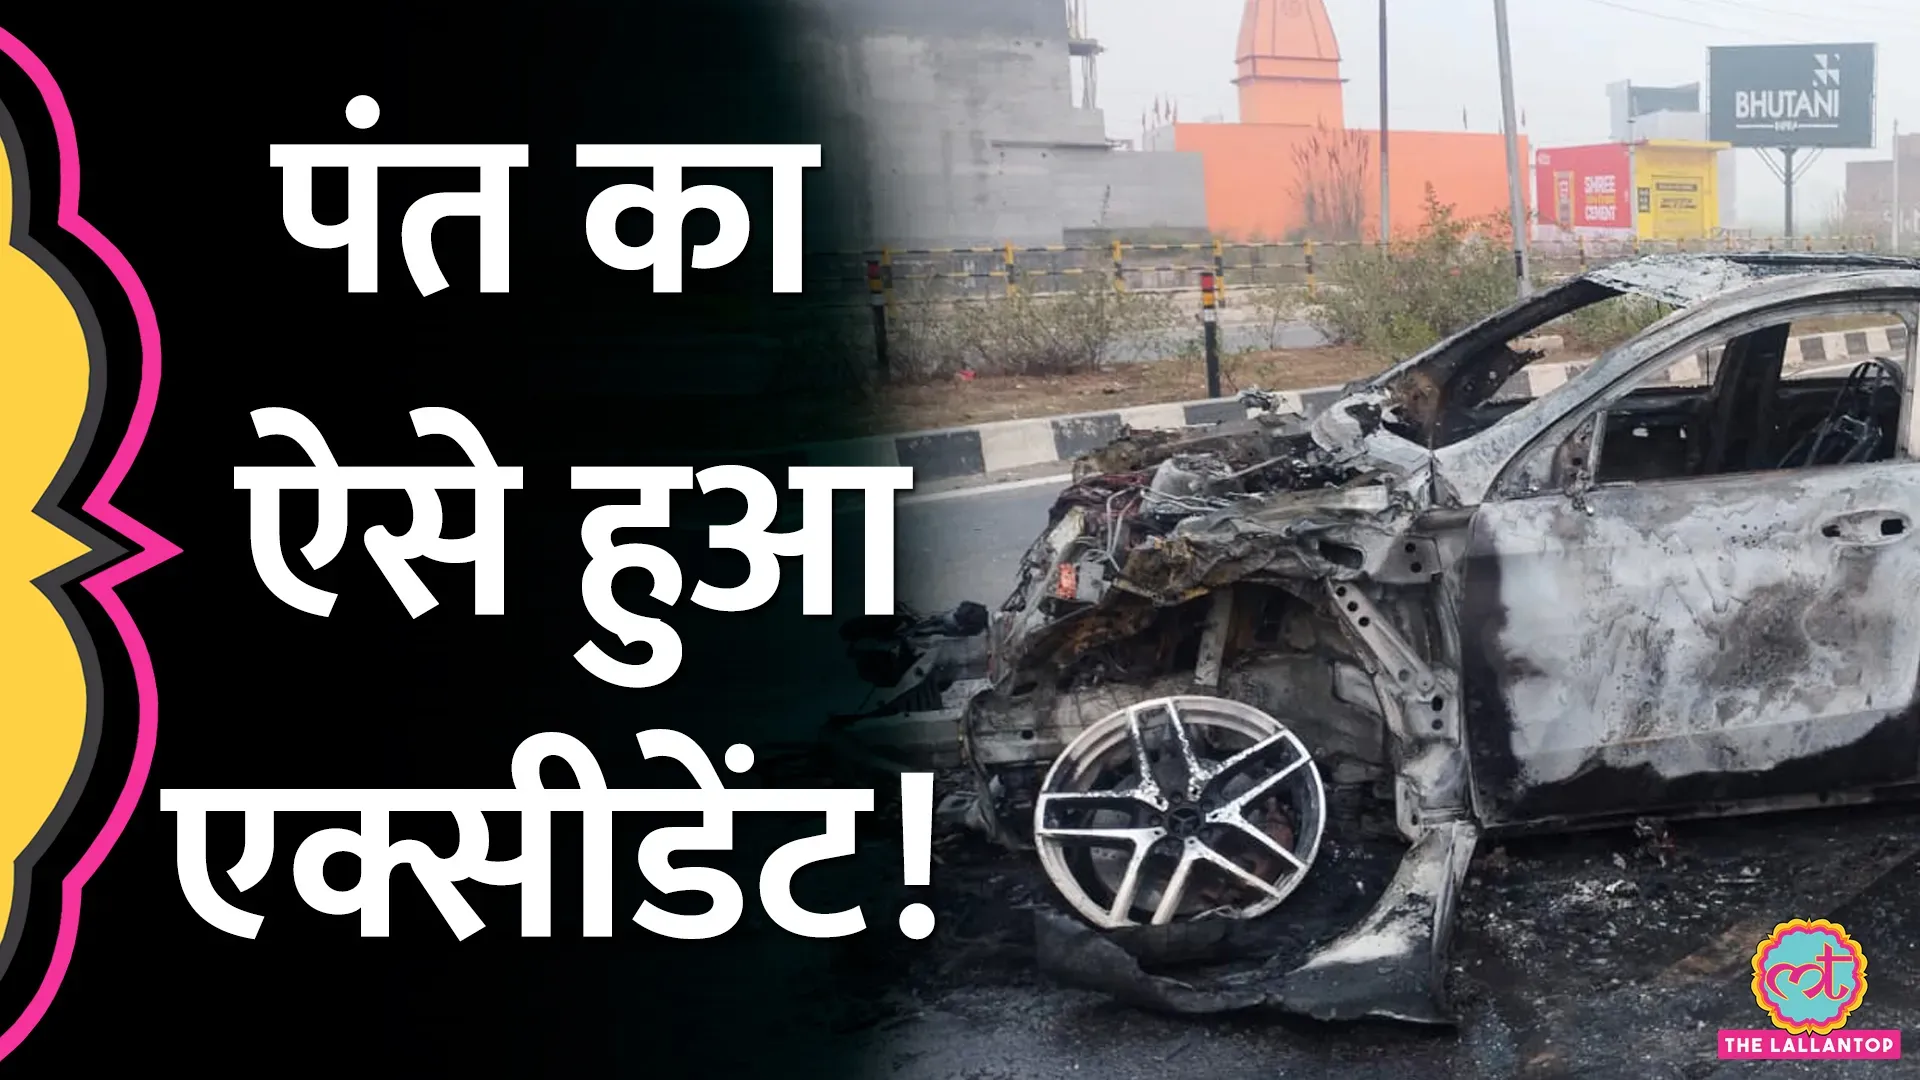 rishabh Pant Accident